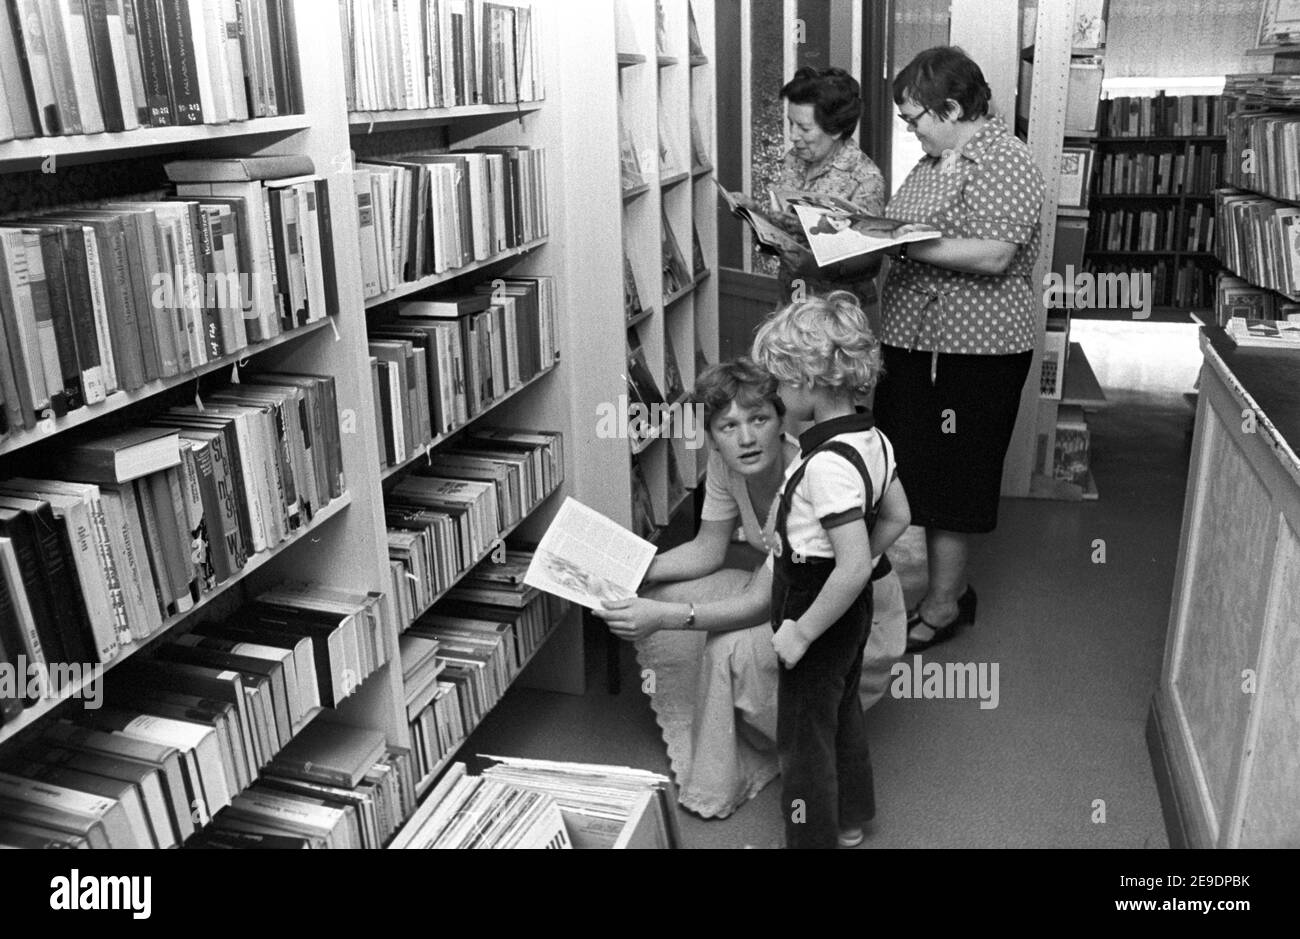 15 settembre 1982, Sassonia, Zschortau: Bambini e lettori adulti si trovano tra gli scaffali dei libri nella biblioteca comunale di Zschortau nell'autunno 1982. Data esatta della fotografia non nota. Foto: Volkmar Heinz/dpa-Zentralbild/ZB Foto Stock